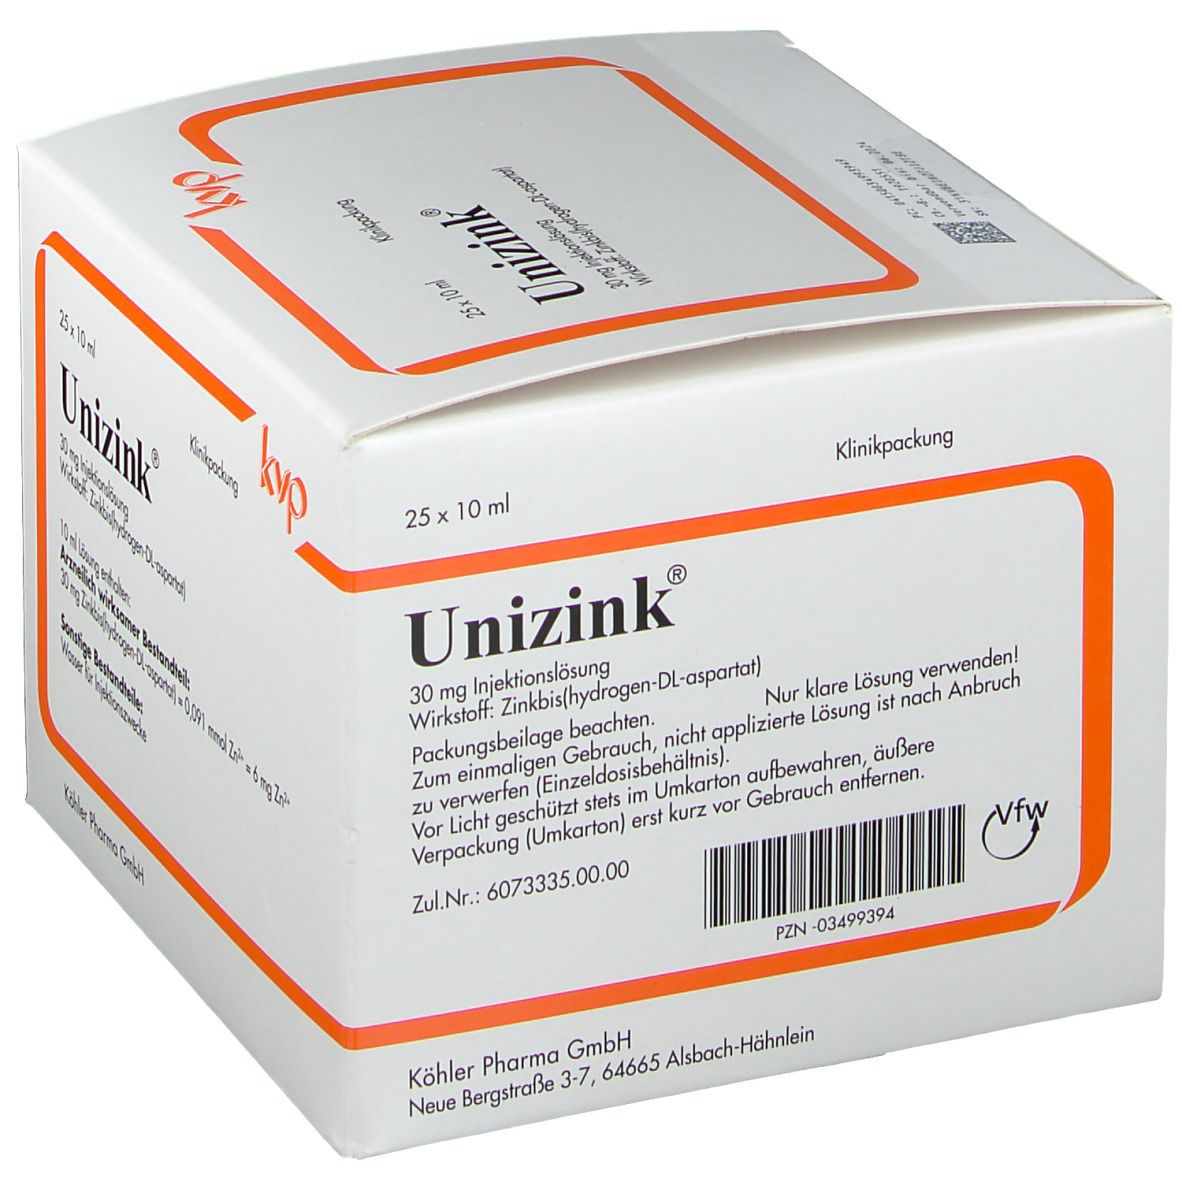 Unizink®